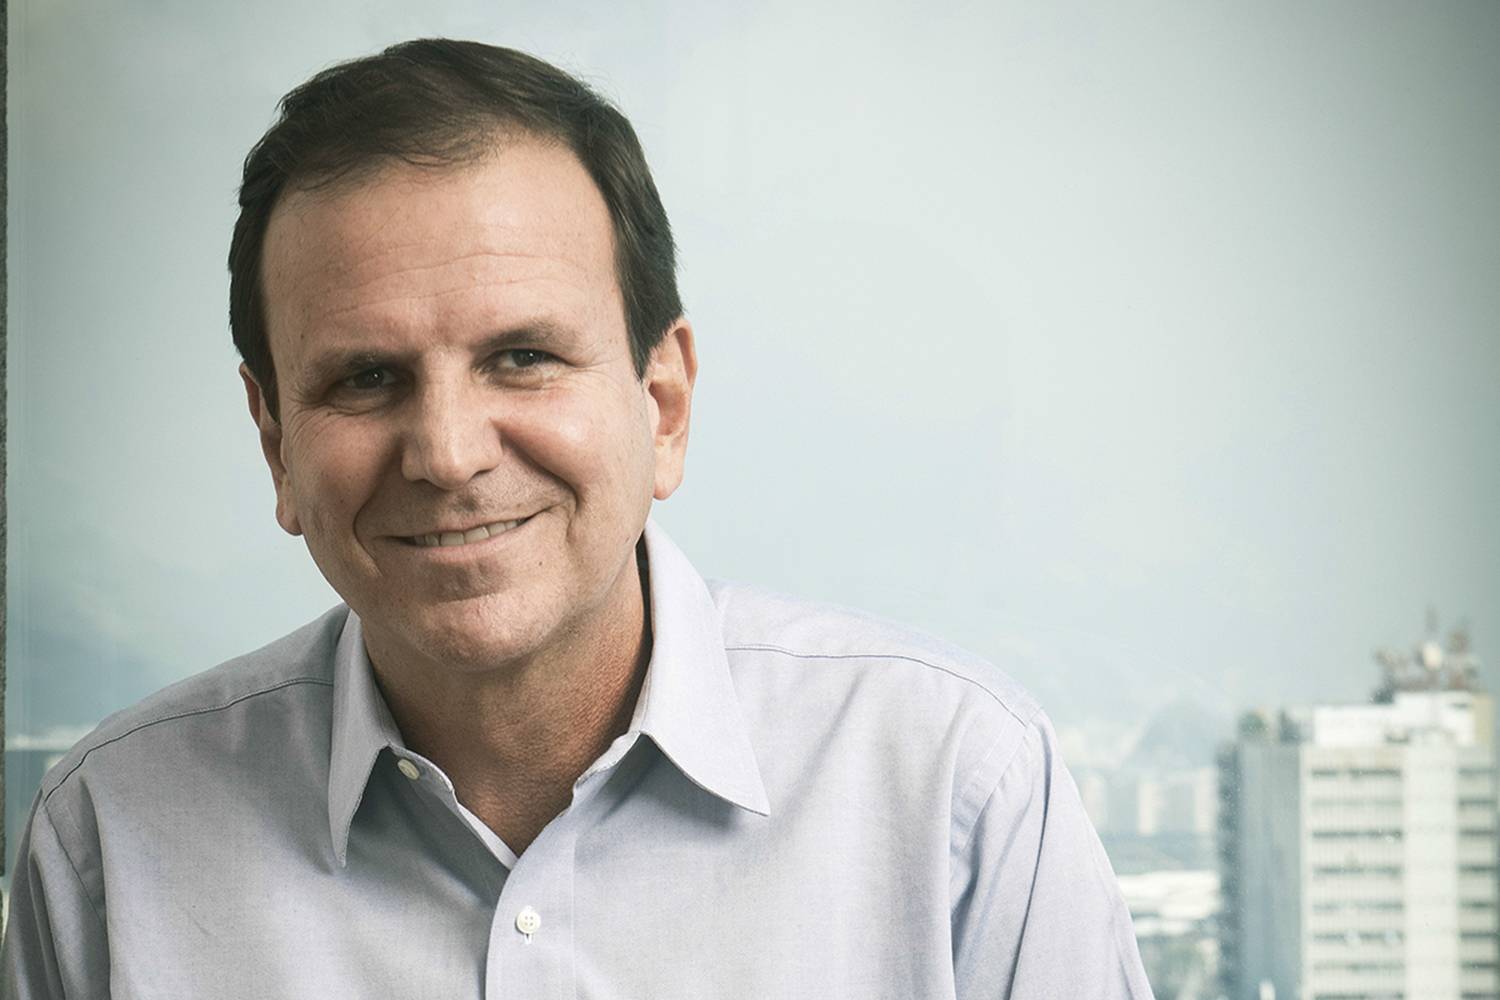 VEJA entrevista Eduardo Paes, candidato a prefeito do Rio